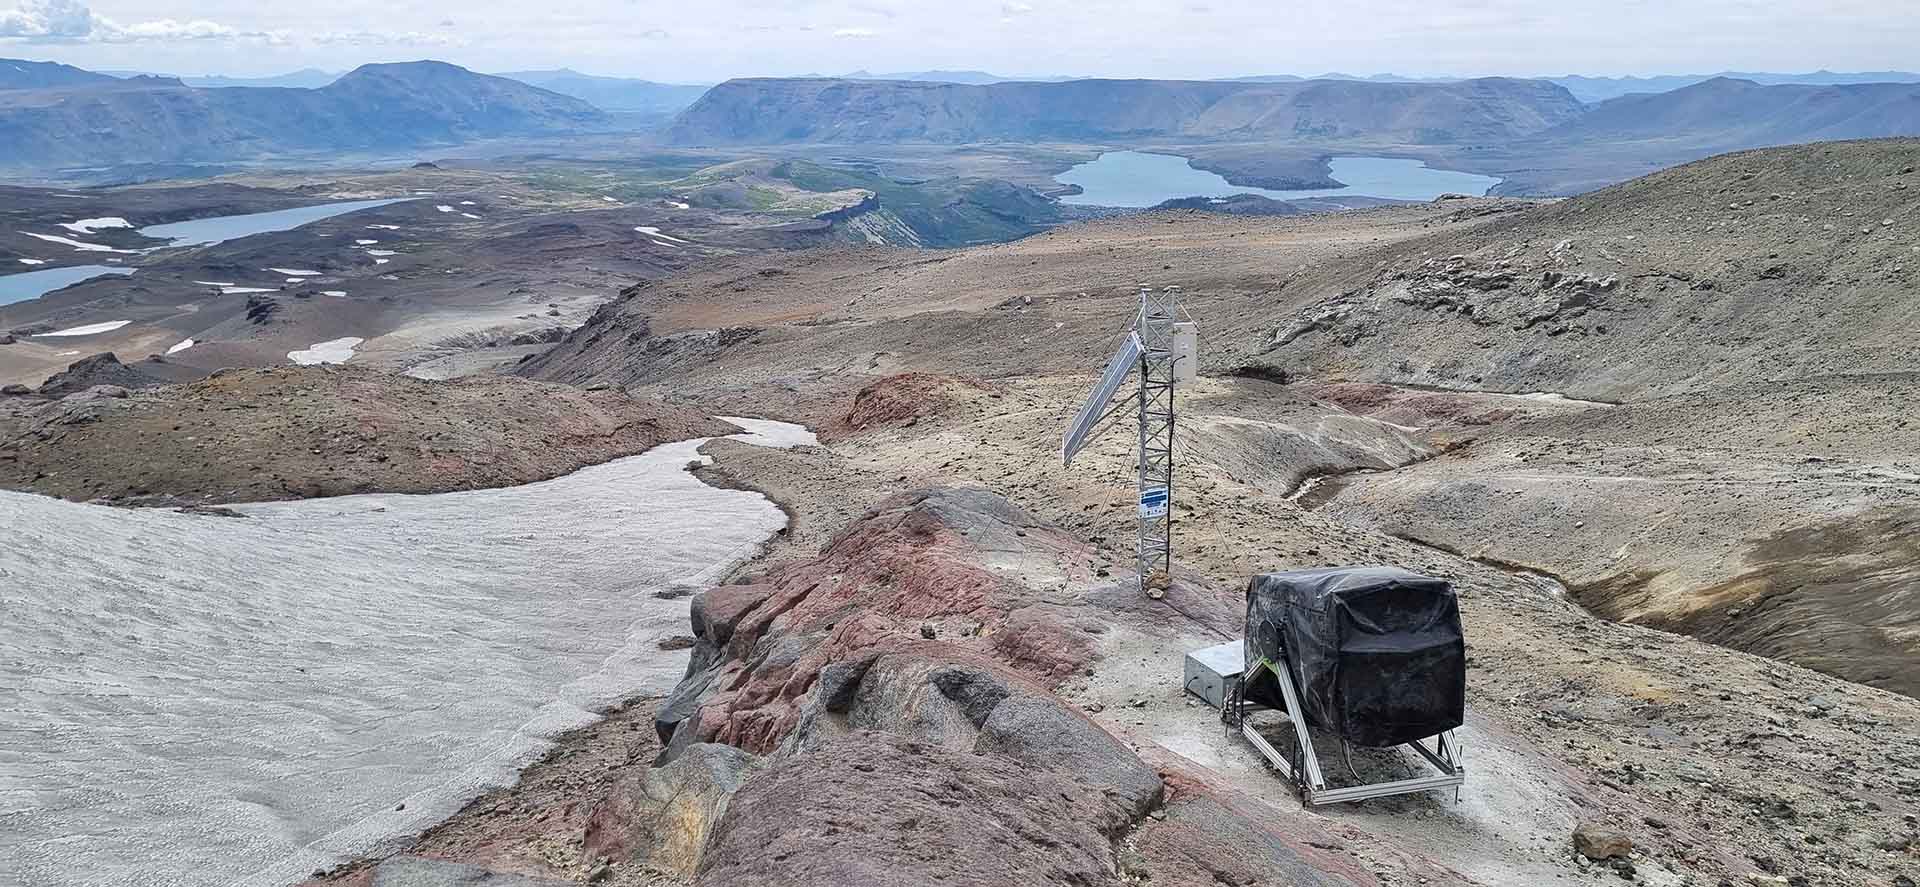 SEGEMAR a participé à l’installation d’un télescope de haute technologie pour étudier le volcan Copahue